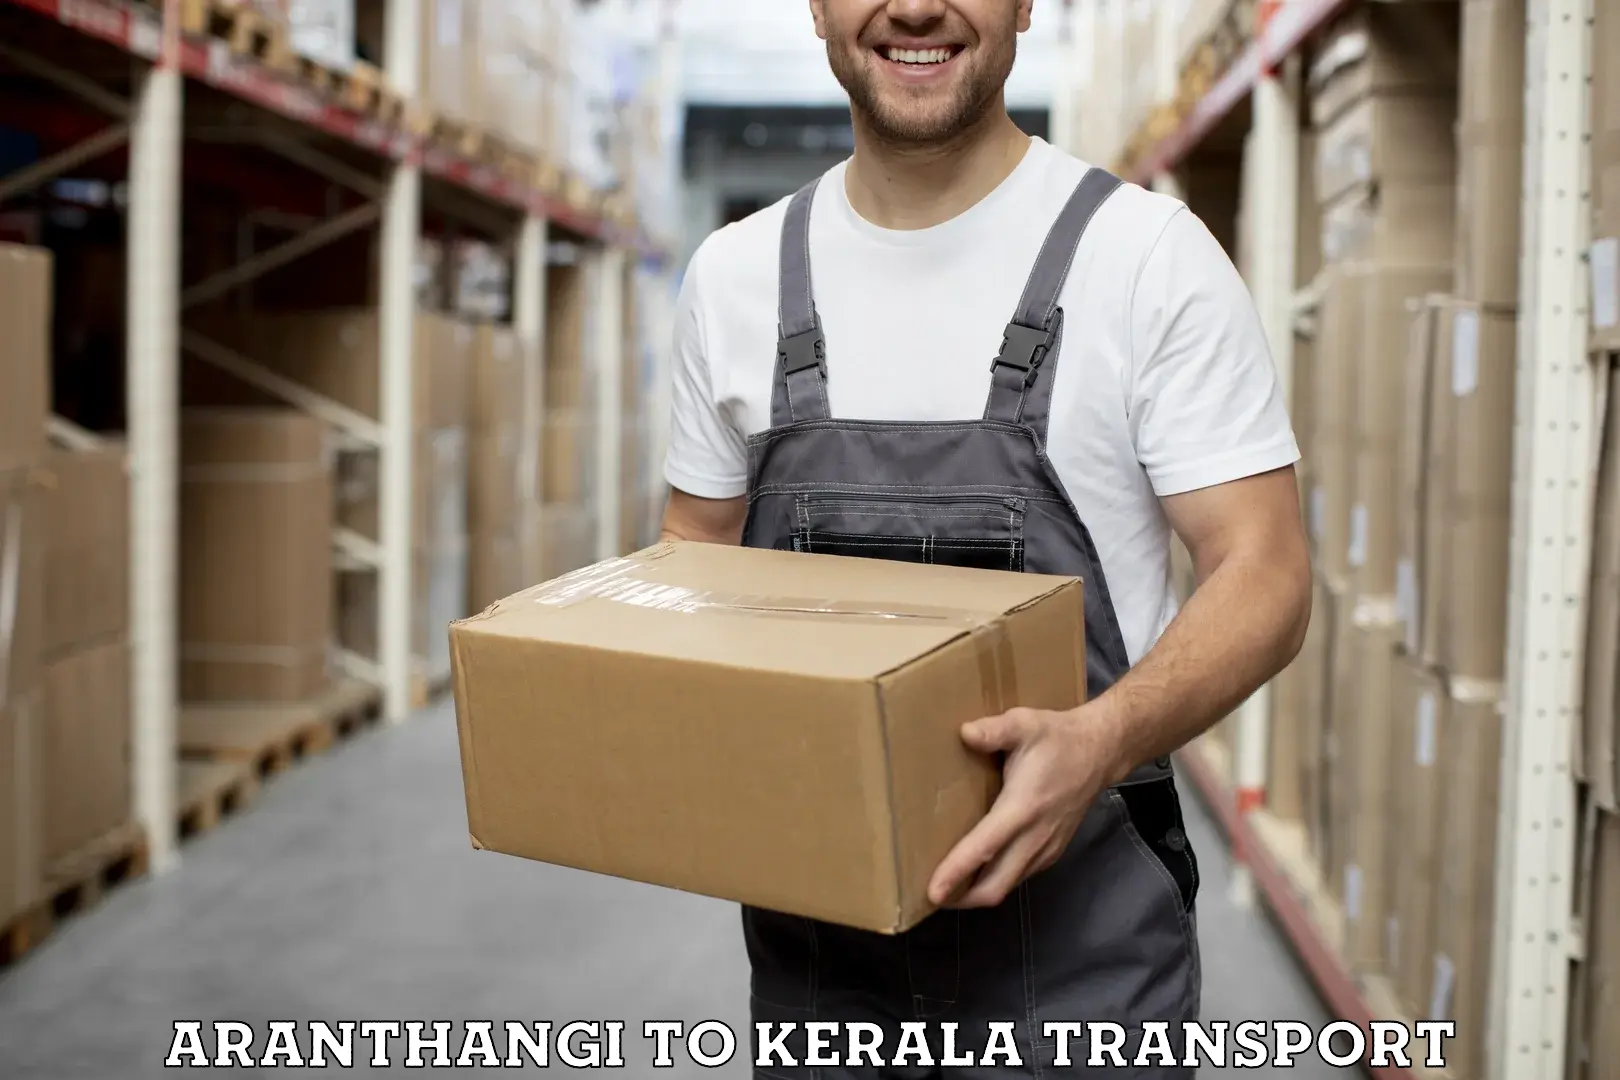 Furniture transport service Aranthangi to Palai